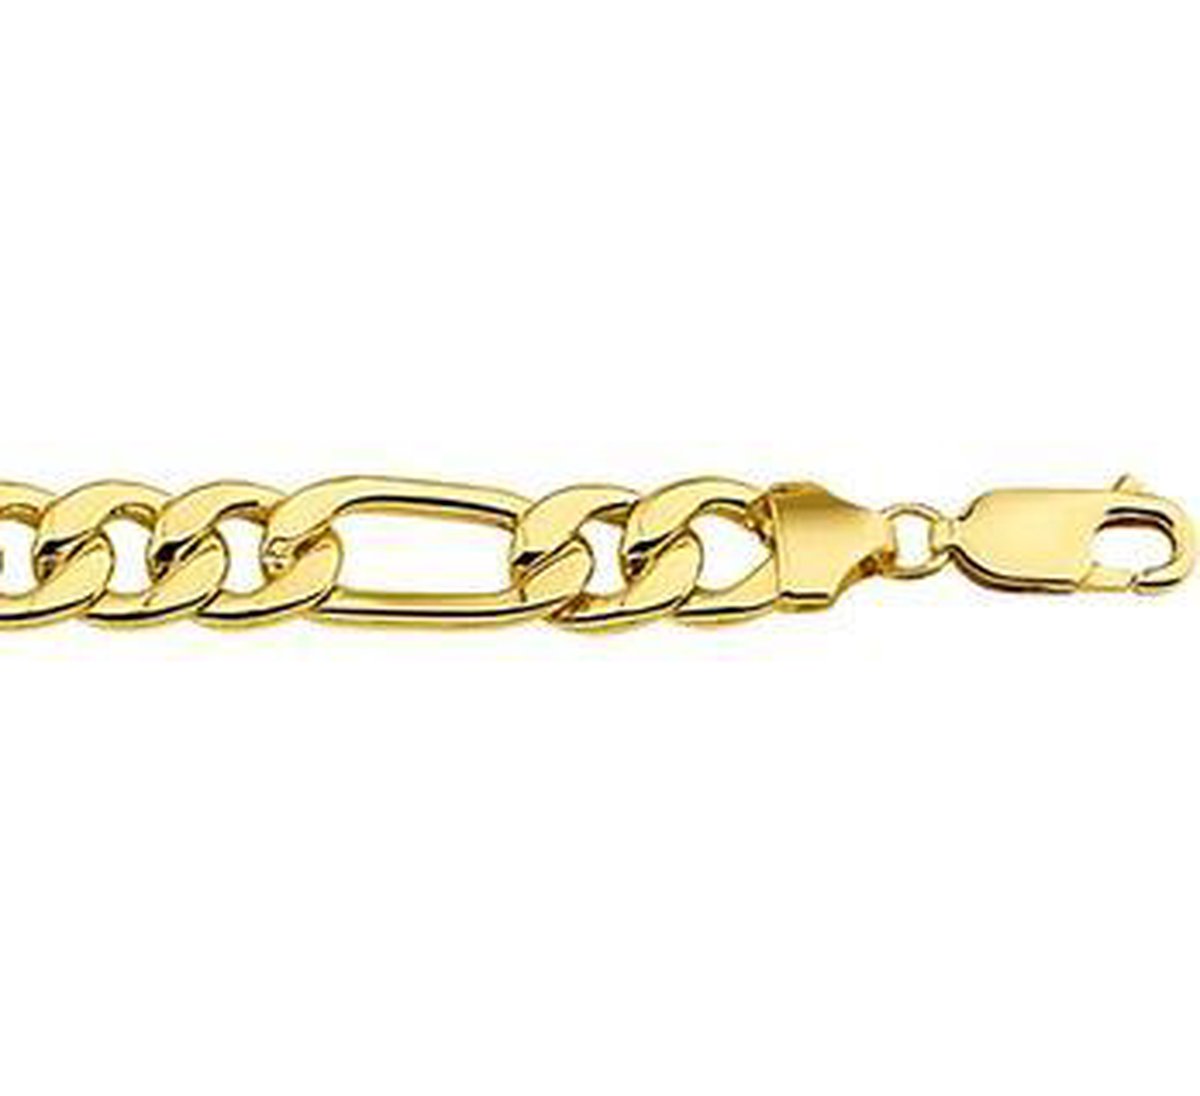 ZilGold 14k gouden armband met daarin een kern van 925 zilver.